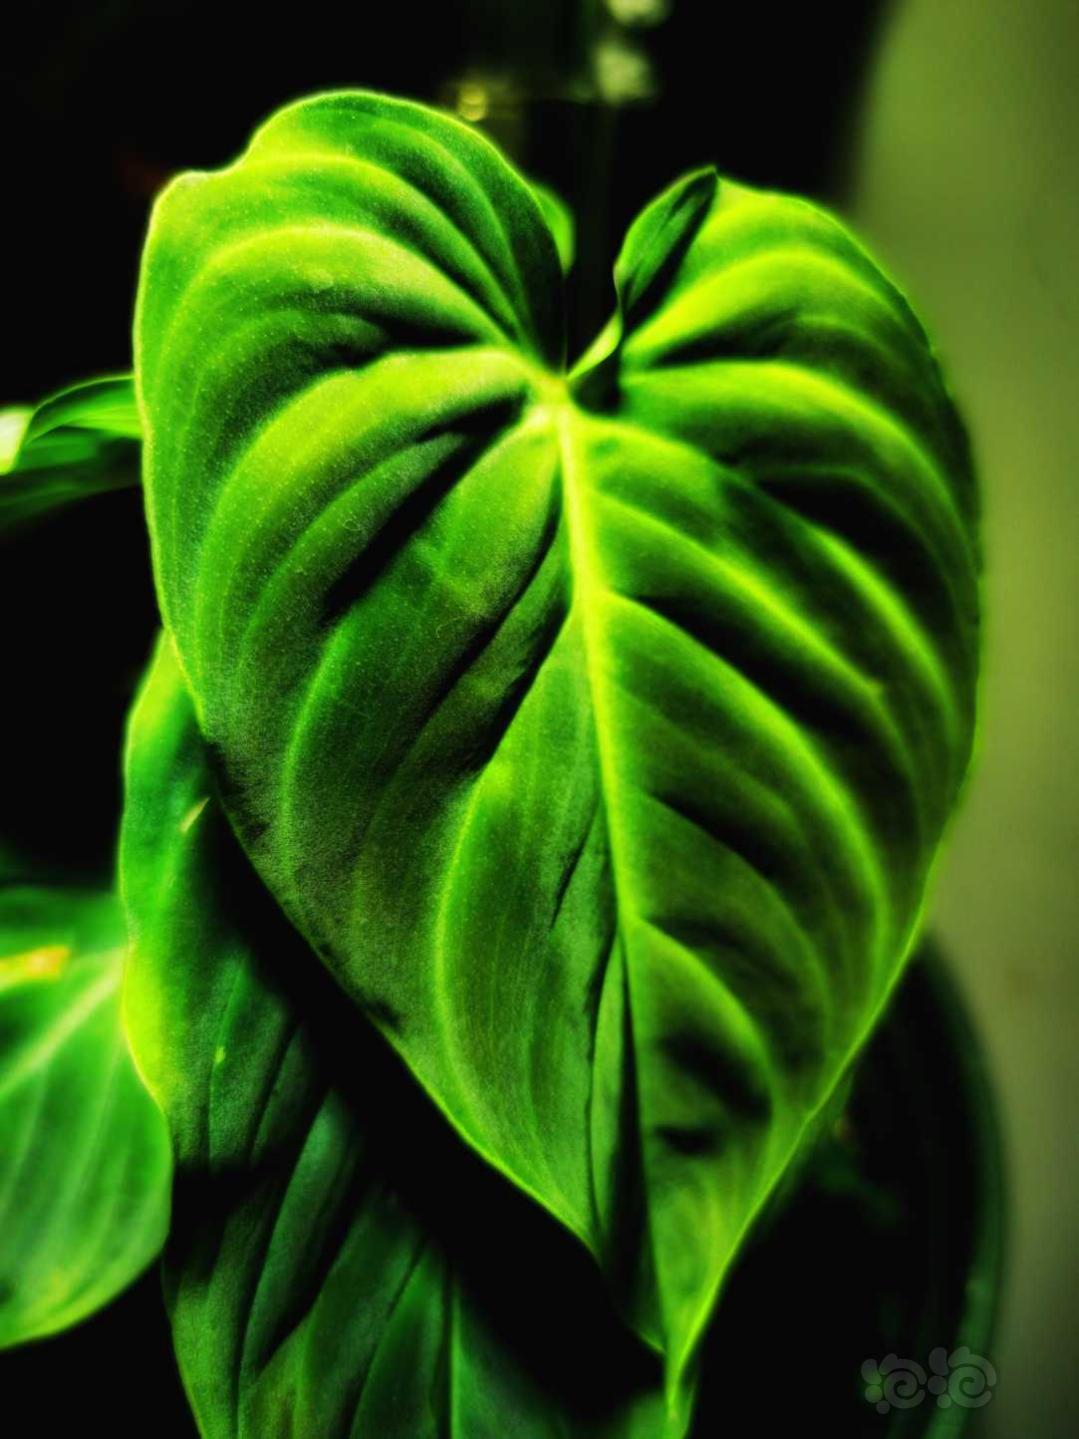 【雨林】更新一些我的雨林小缸内植物的照片-图9